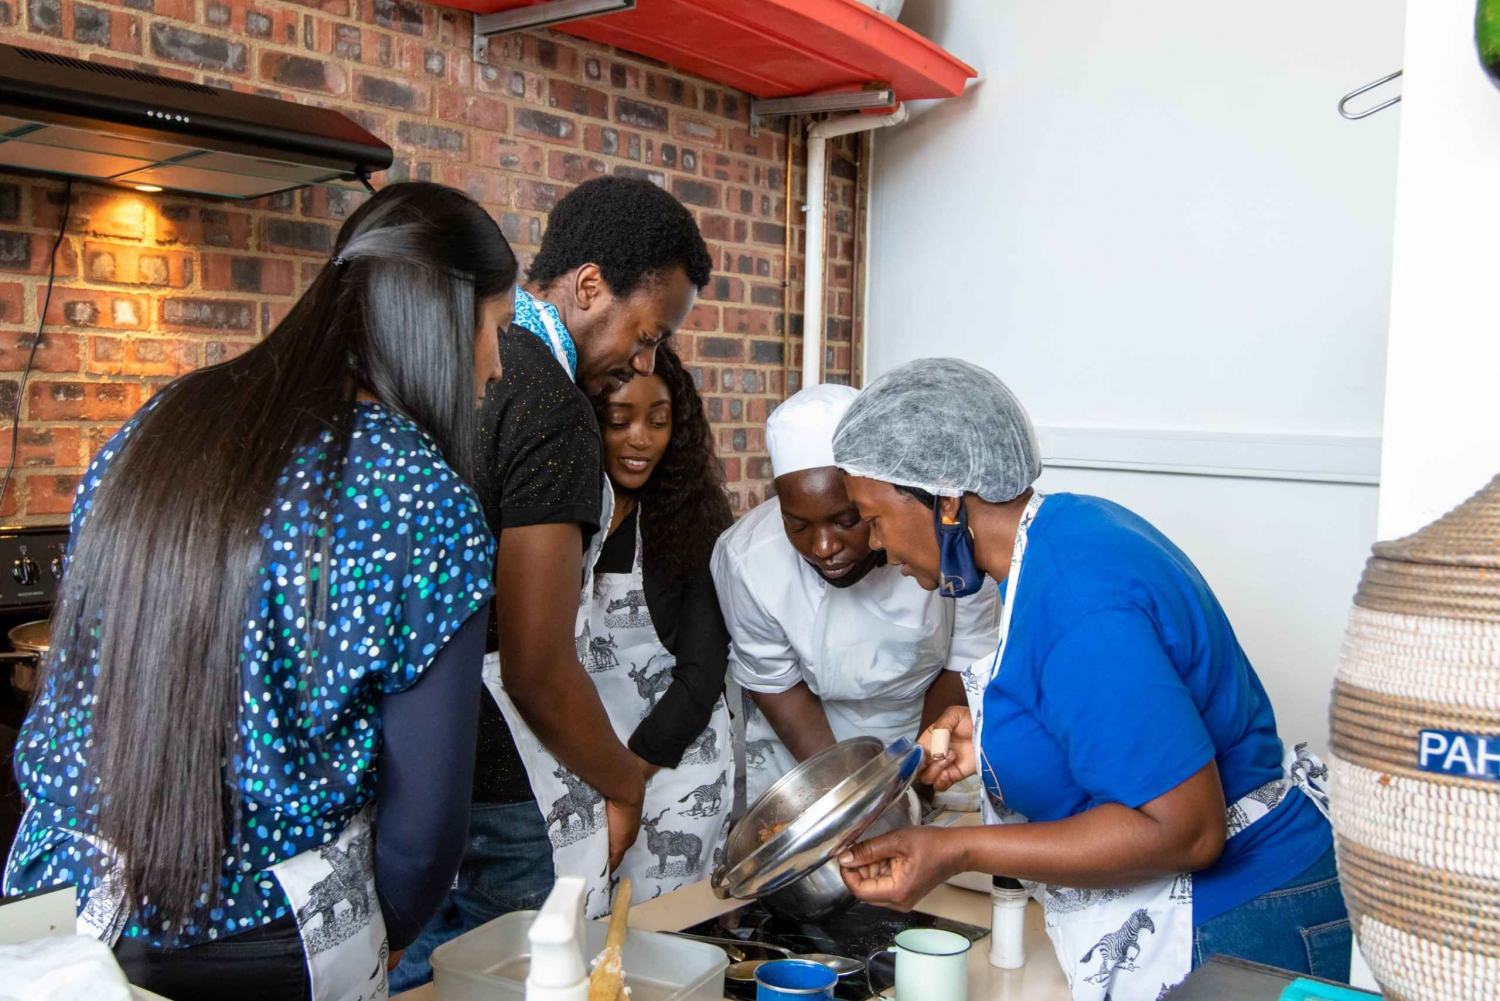 Kapstadt: Kocherlebnis mit authentischer afrikanischer Küche